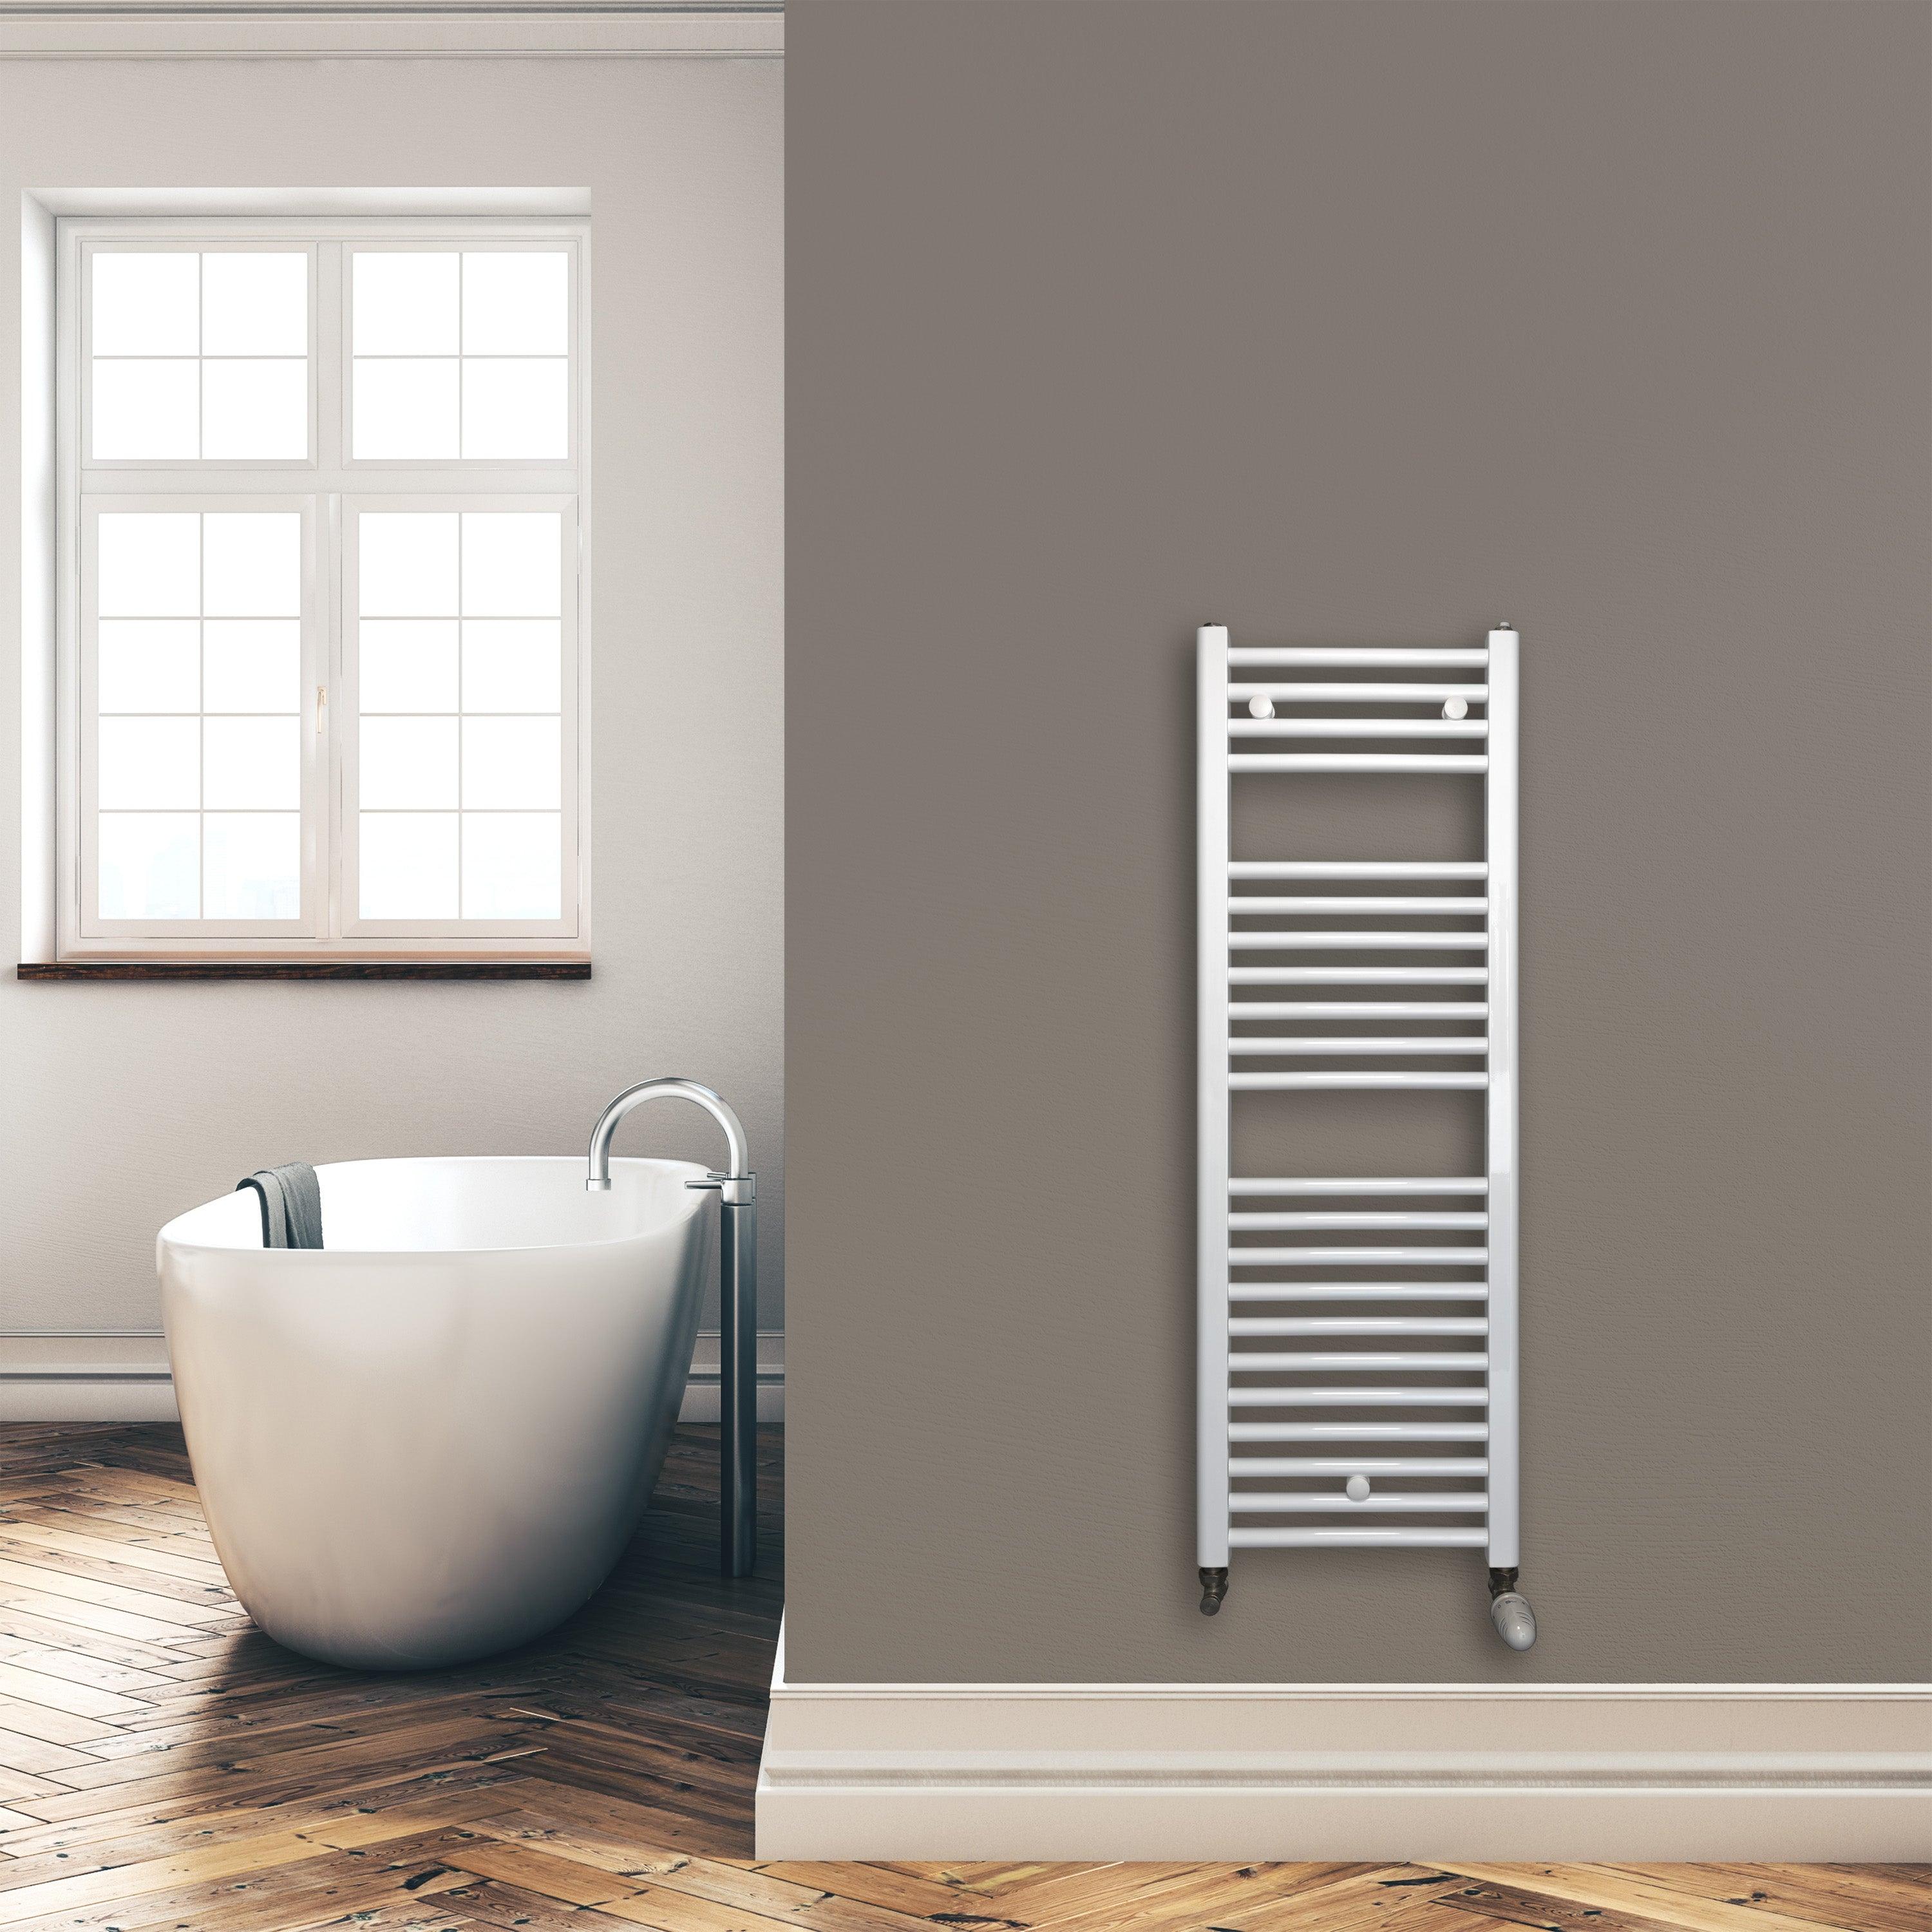 Badheizkörper 1160 x 400 mm gerade mit Standardanschluss Handtuchhalter Badezimmer Heizung Handtuchwärmer weiß Montagebeispiel - heizkoerper.shop